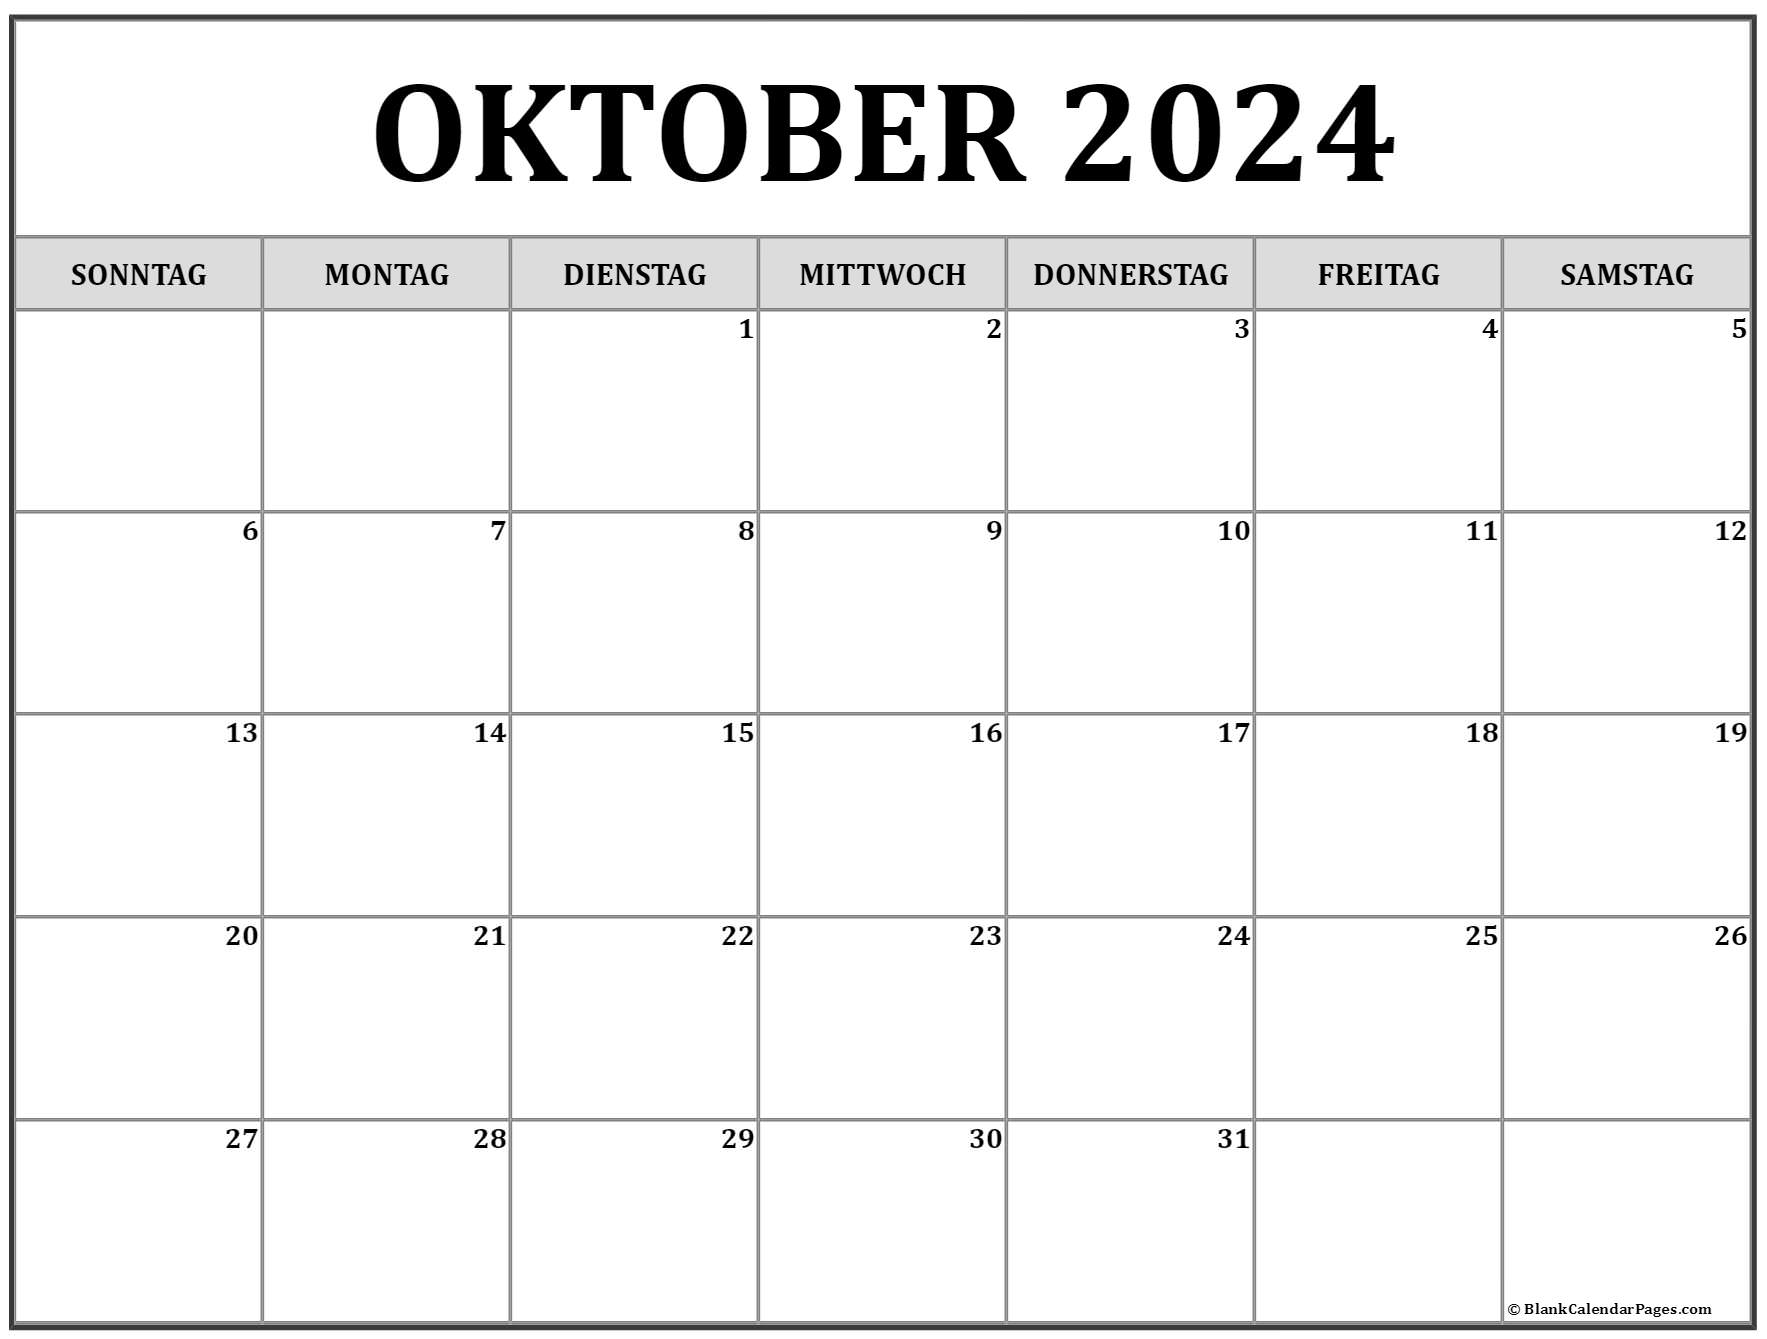  Oktober  2022  kalender  auf Deutsch kalender  2022 